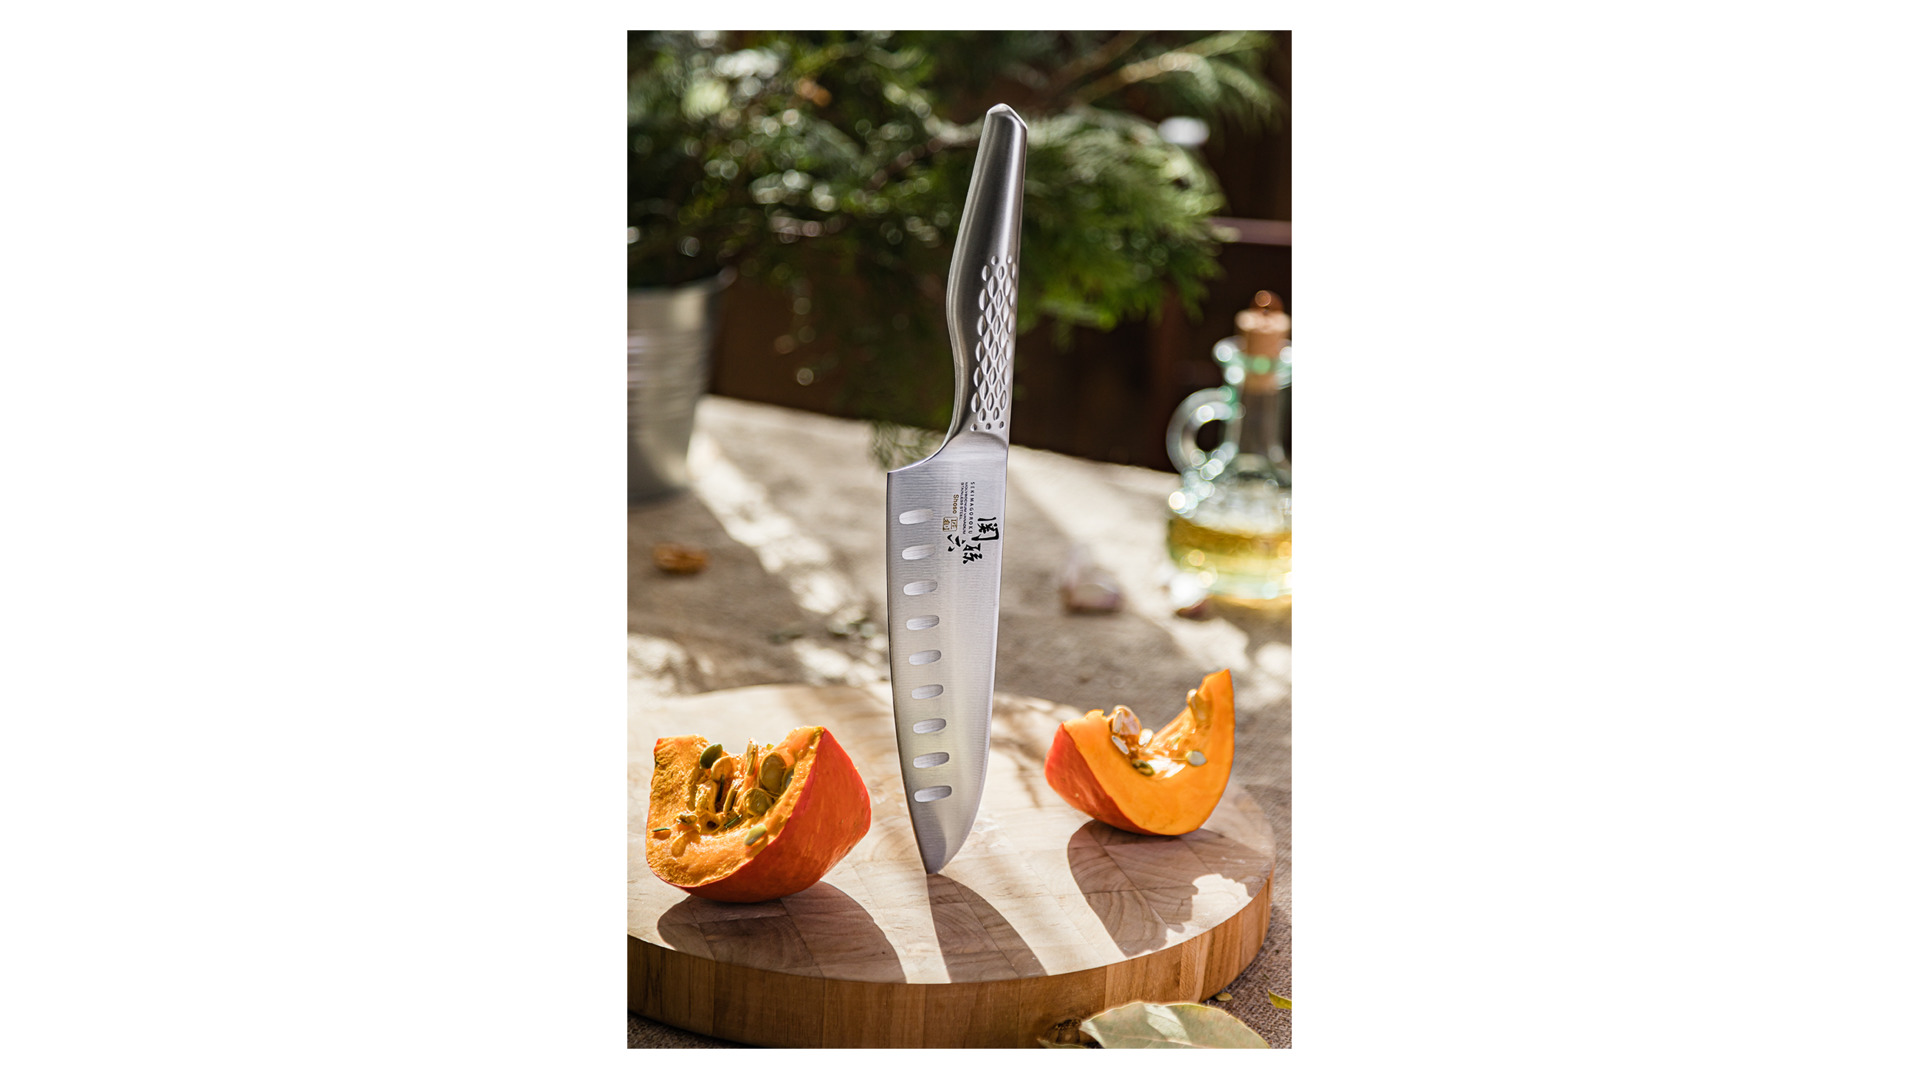 Нож поварской Сантоку KAI Магороку Шосо 16,5 см, сталь кованая нержавеющая